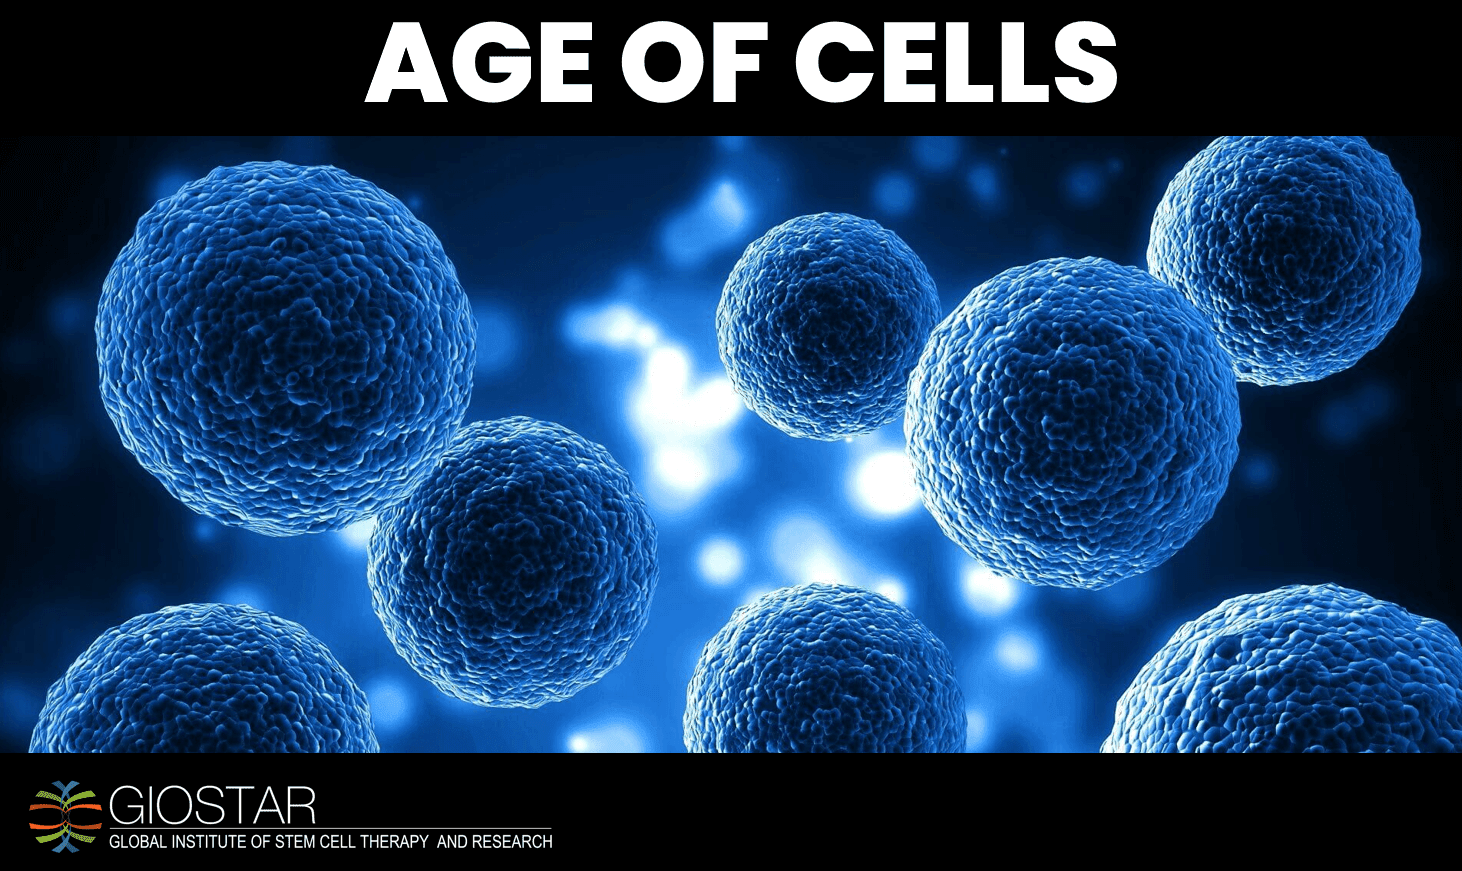 GIOSTAR Mini-Documentary | Age of Cells